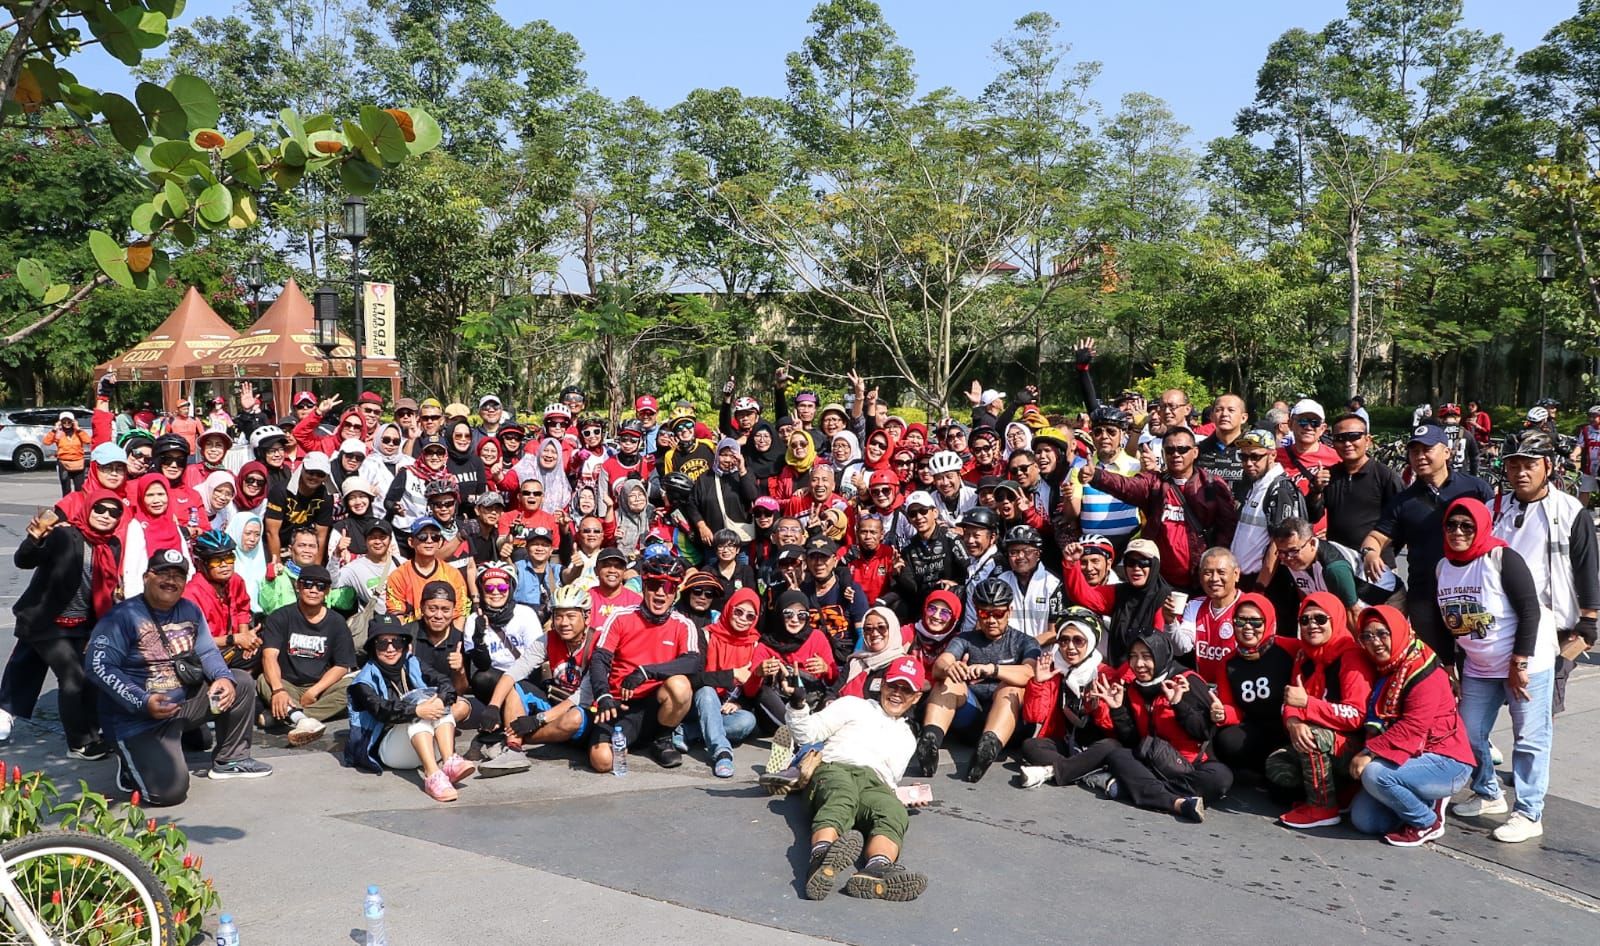 event akbar yang diselenggarakan oleh Komunitas Balad 88 yaitu Fun Run 8,8K akan digelar pada 18 Juni 2023 di Bandung